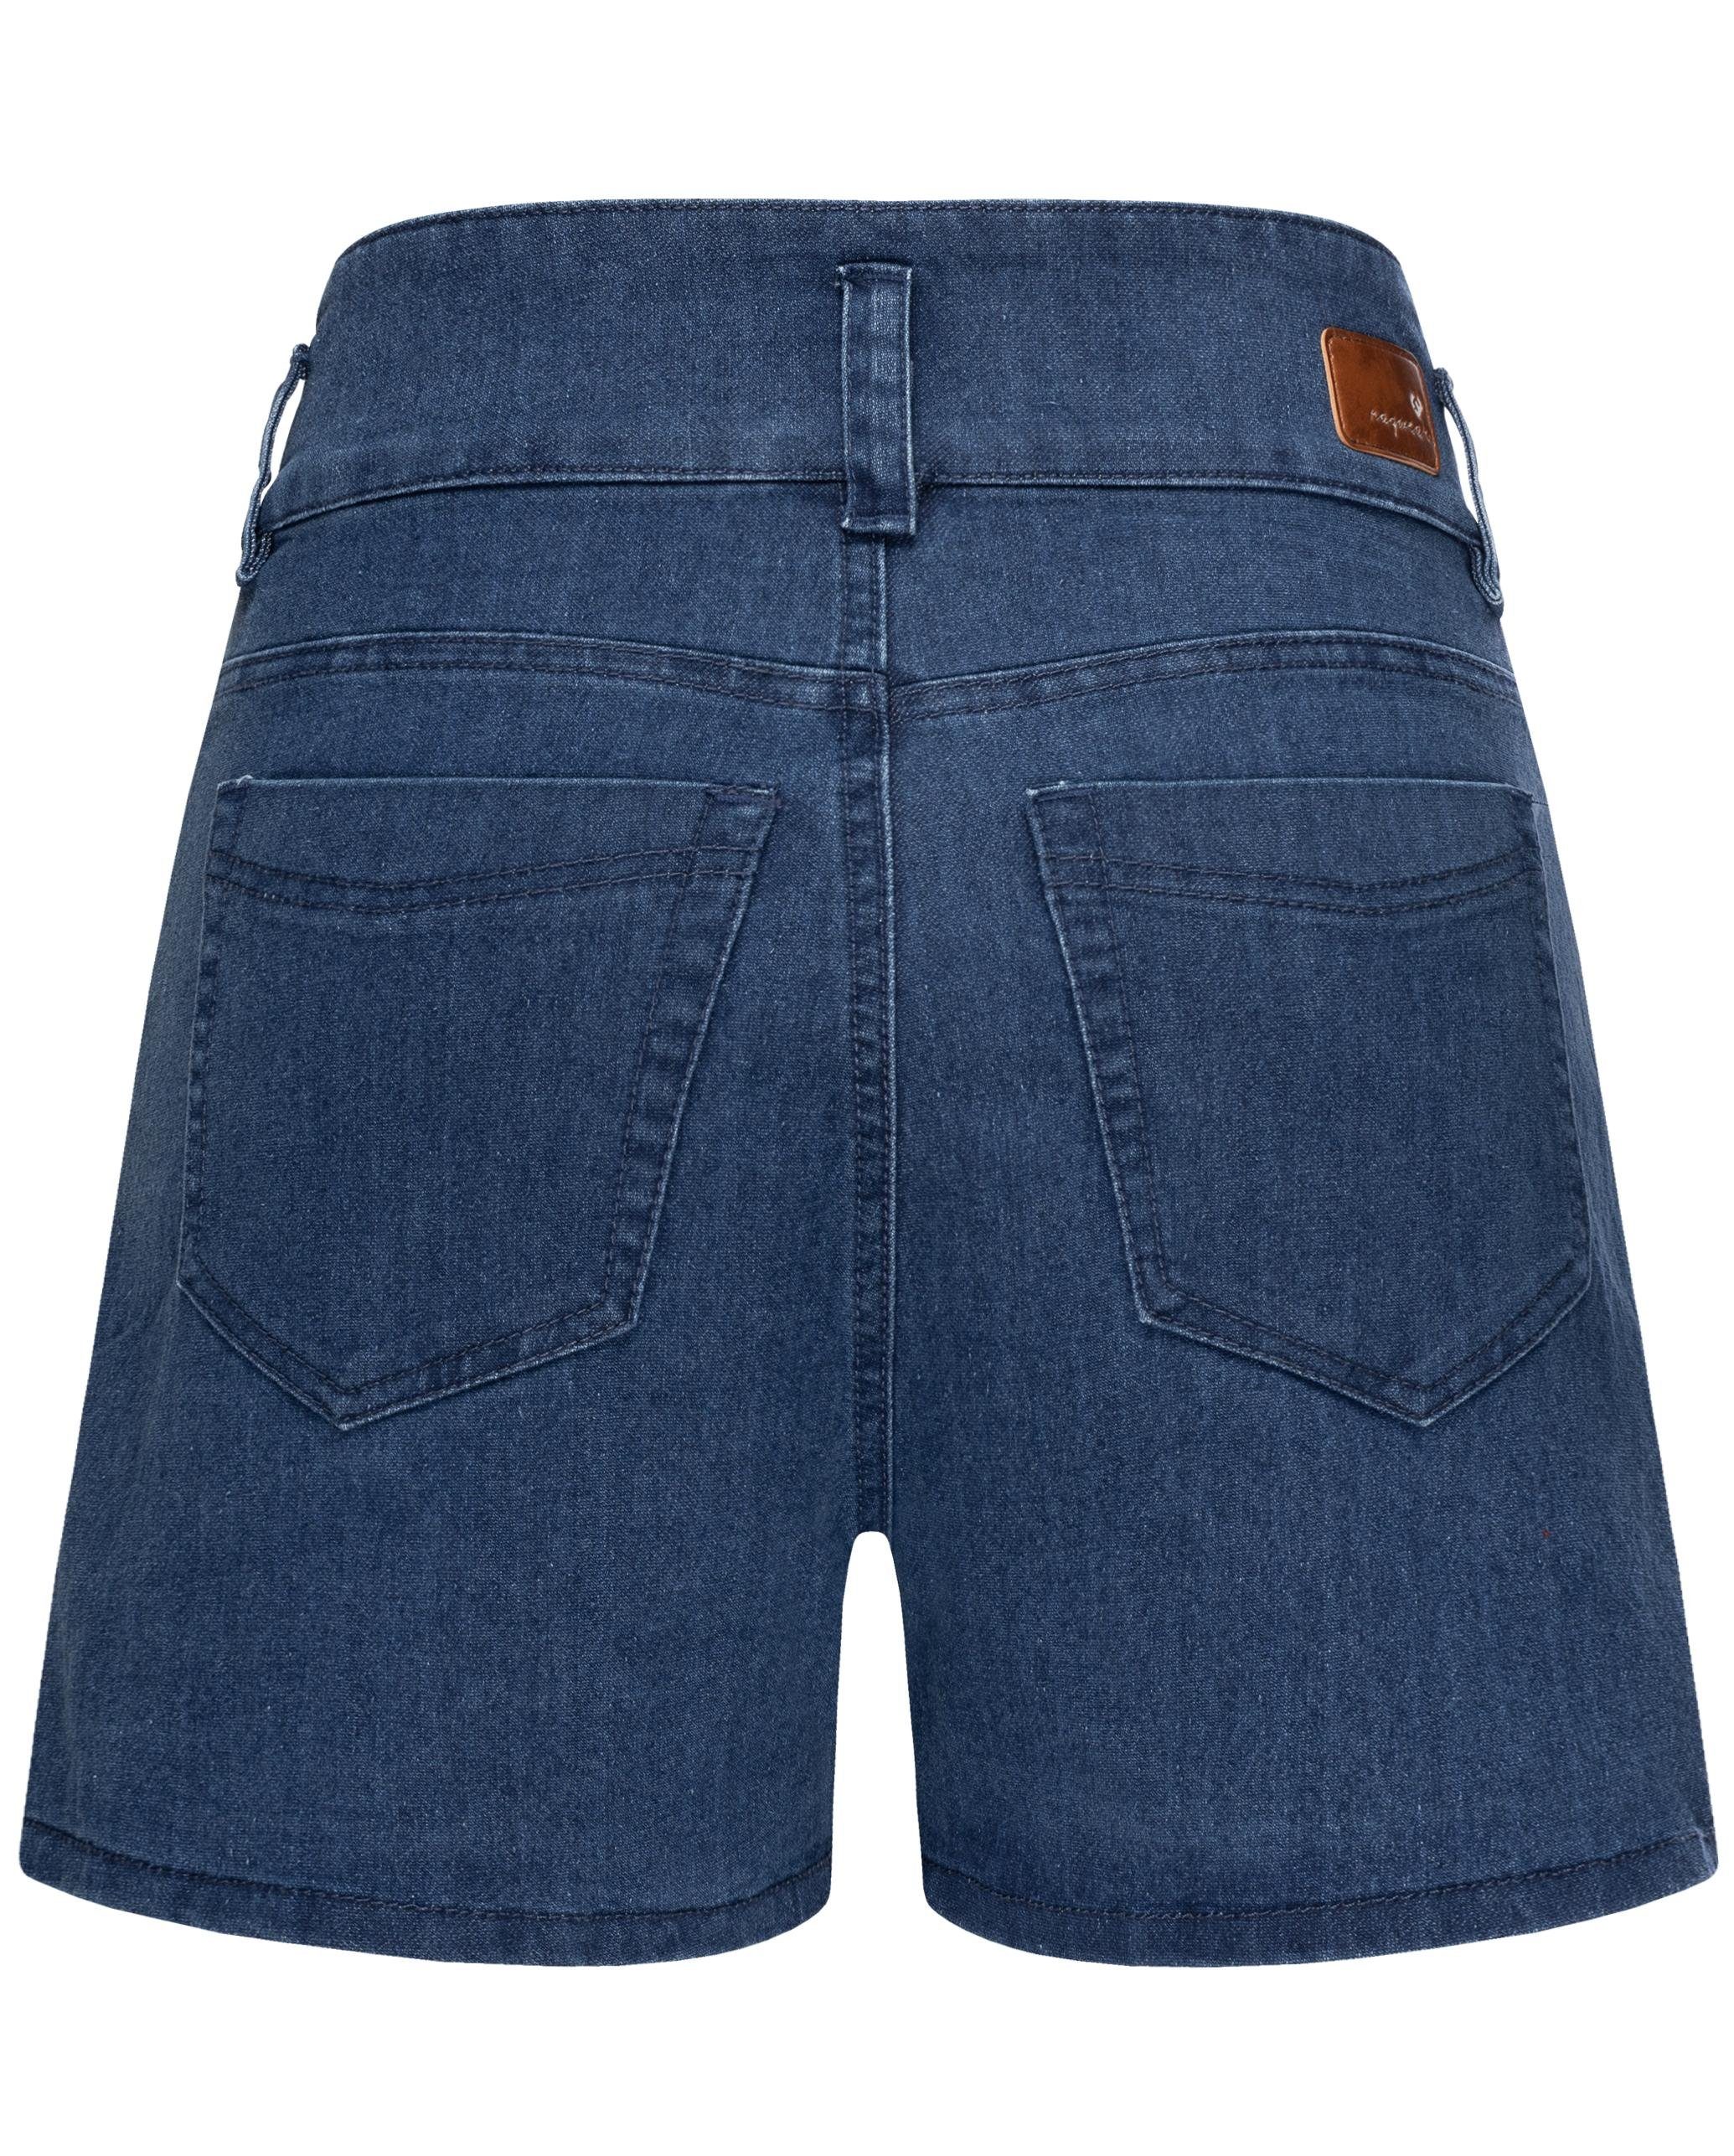 Ragwear Shorts Suzzie stylische, kurze Sommerhose in Jeansoptik, Ideale  Passform dank Stretch-Anteil, sehr angenehm zu tragen